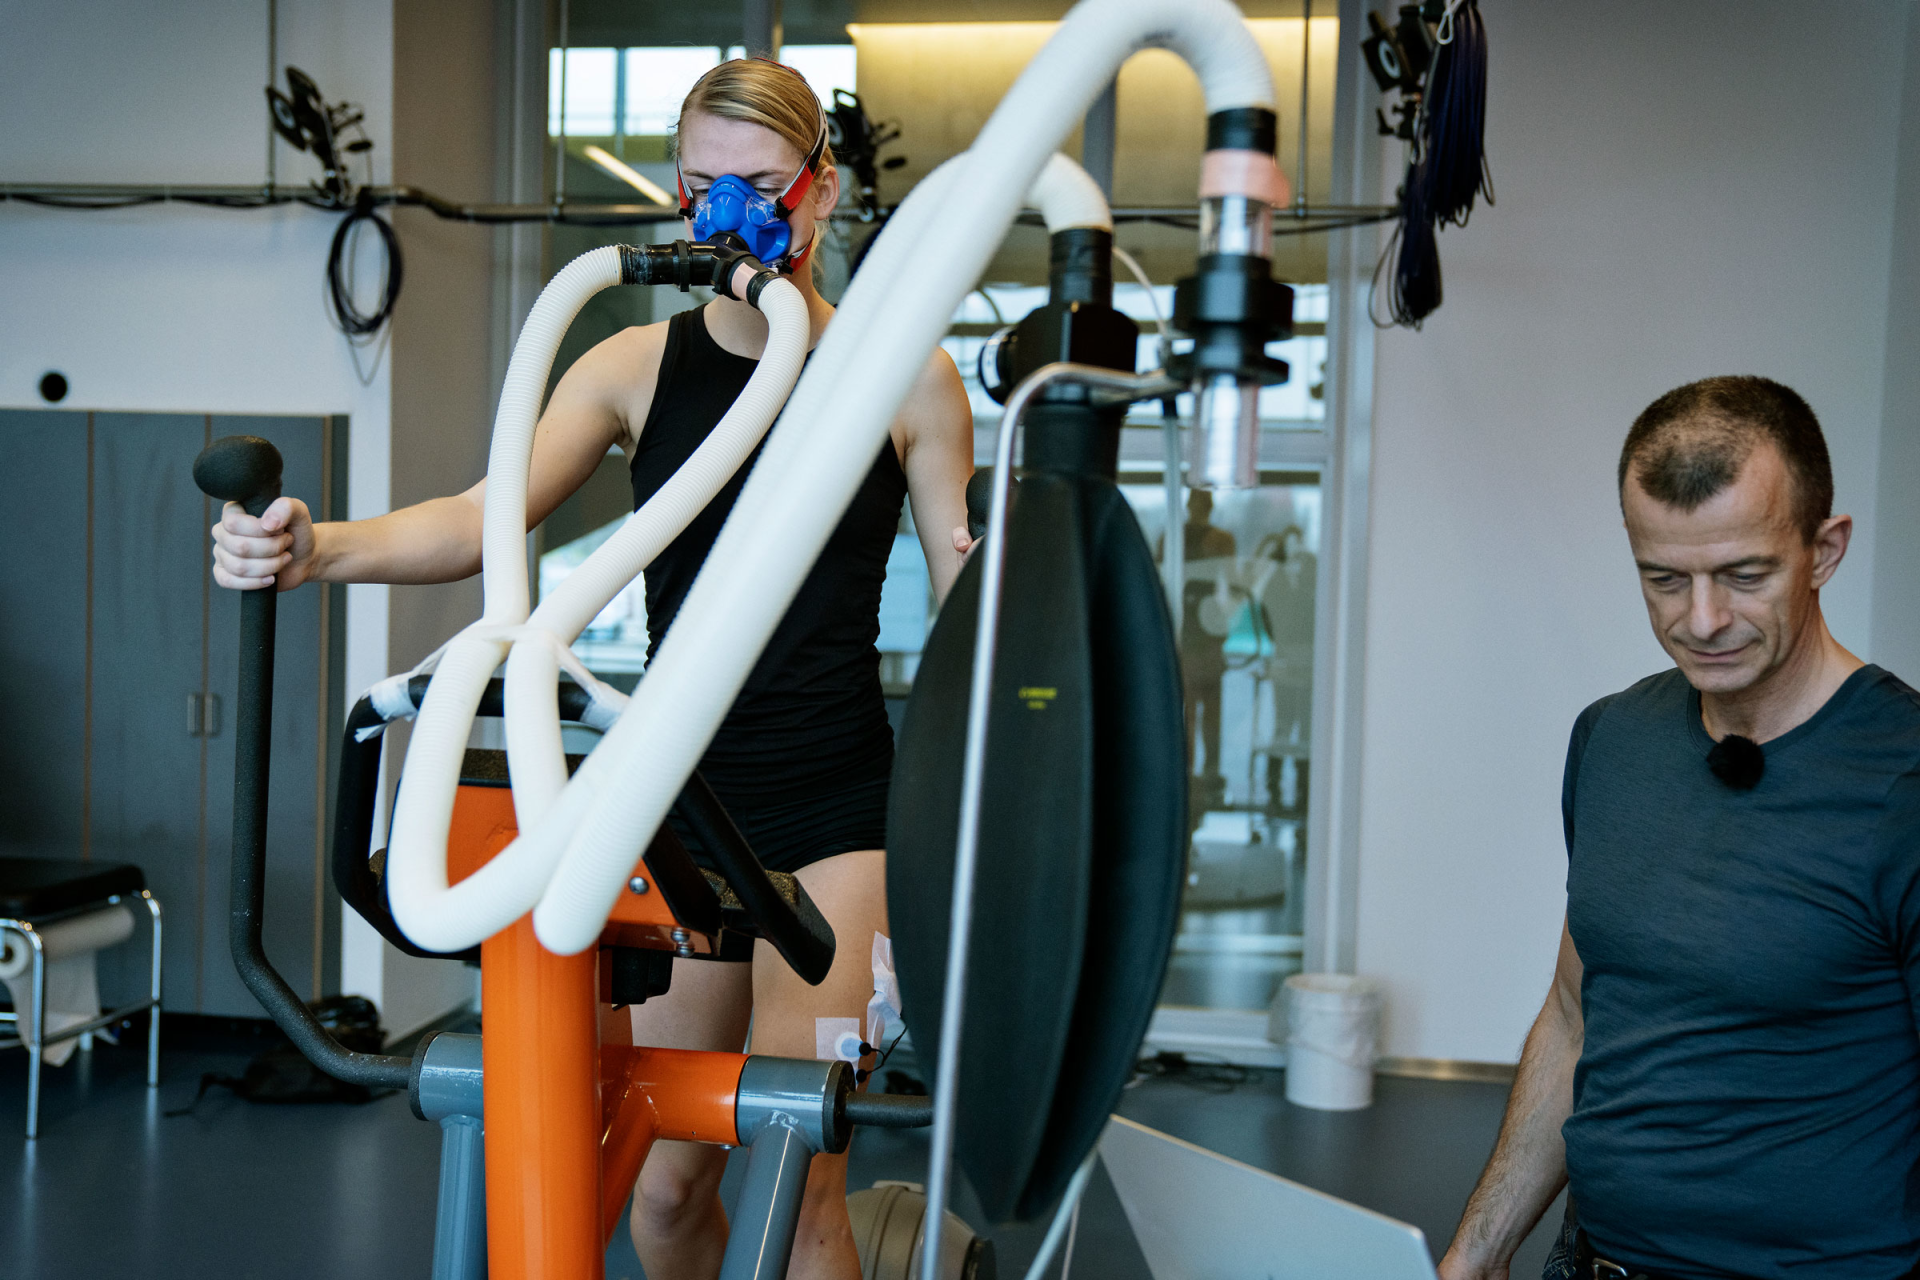 kompan fitness institute genomför forskning om fysisk förmåga